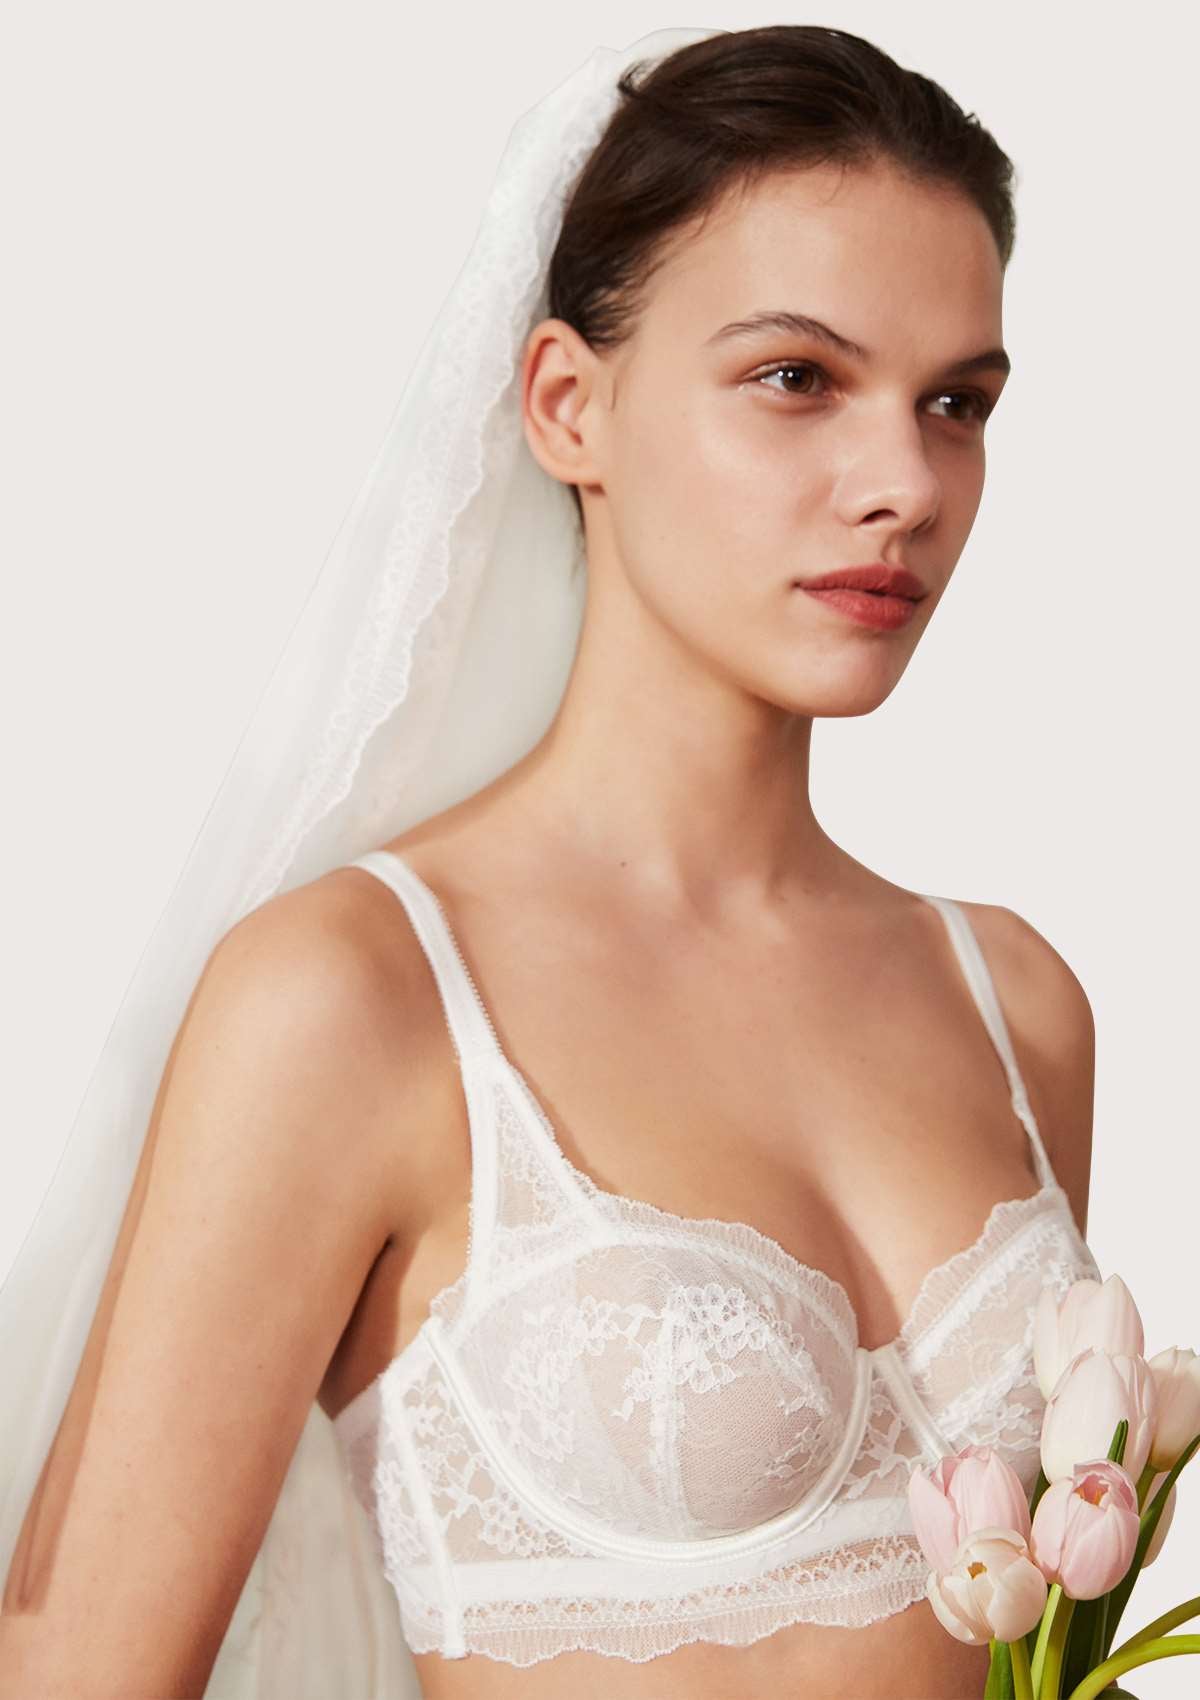 HSIA Floral Lace Unlined Bridal Romantic Balconette Bra Panty Set  - White / 42 / C